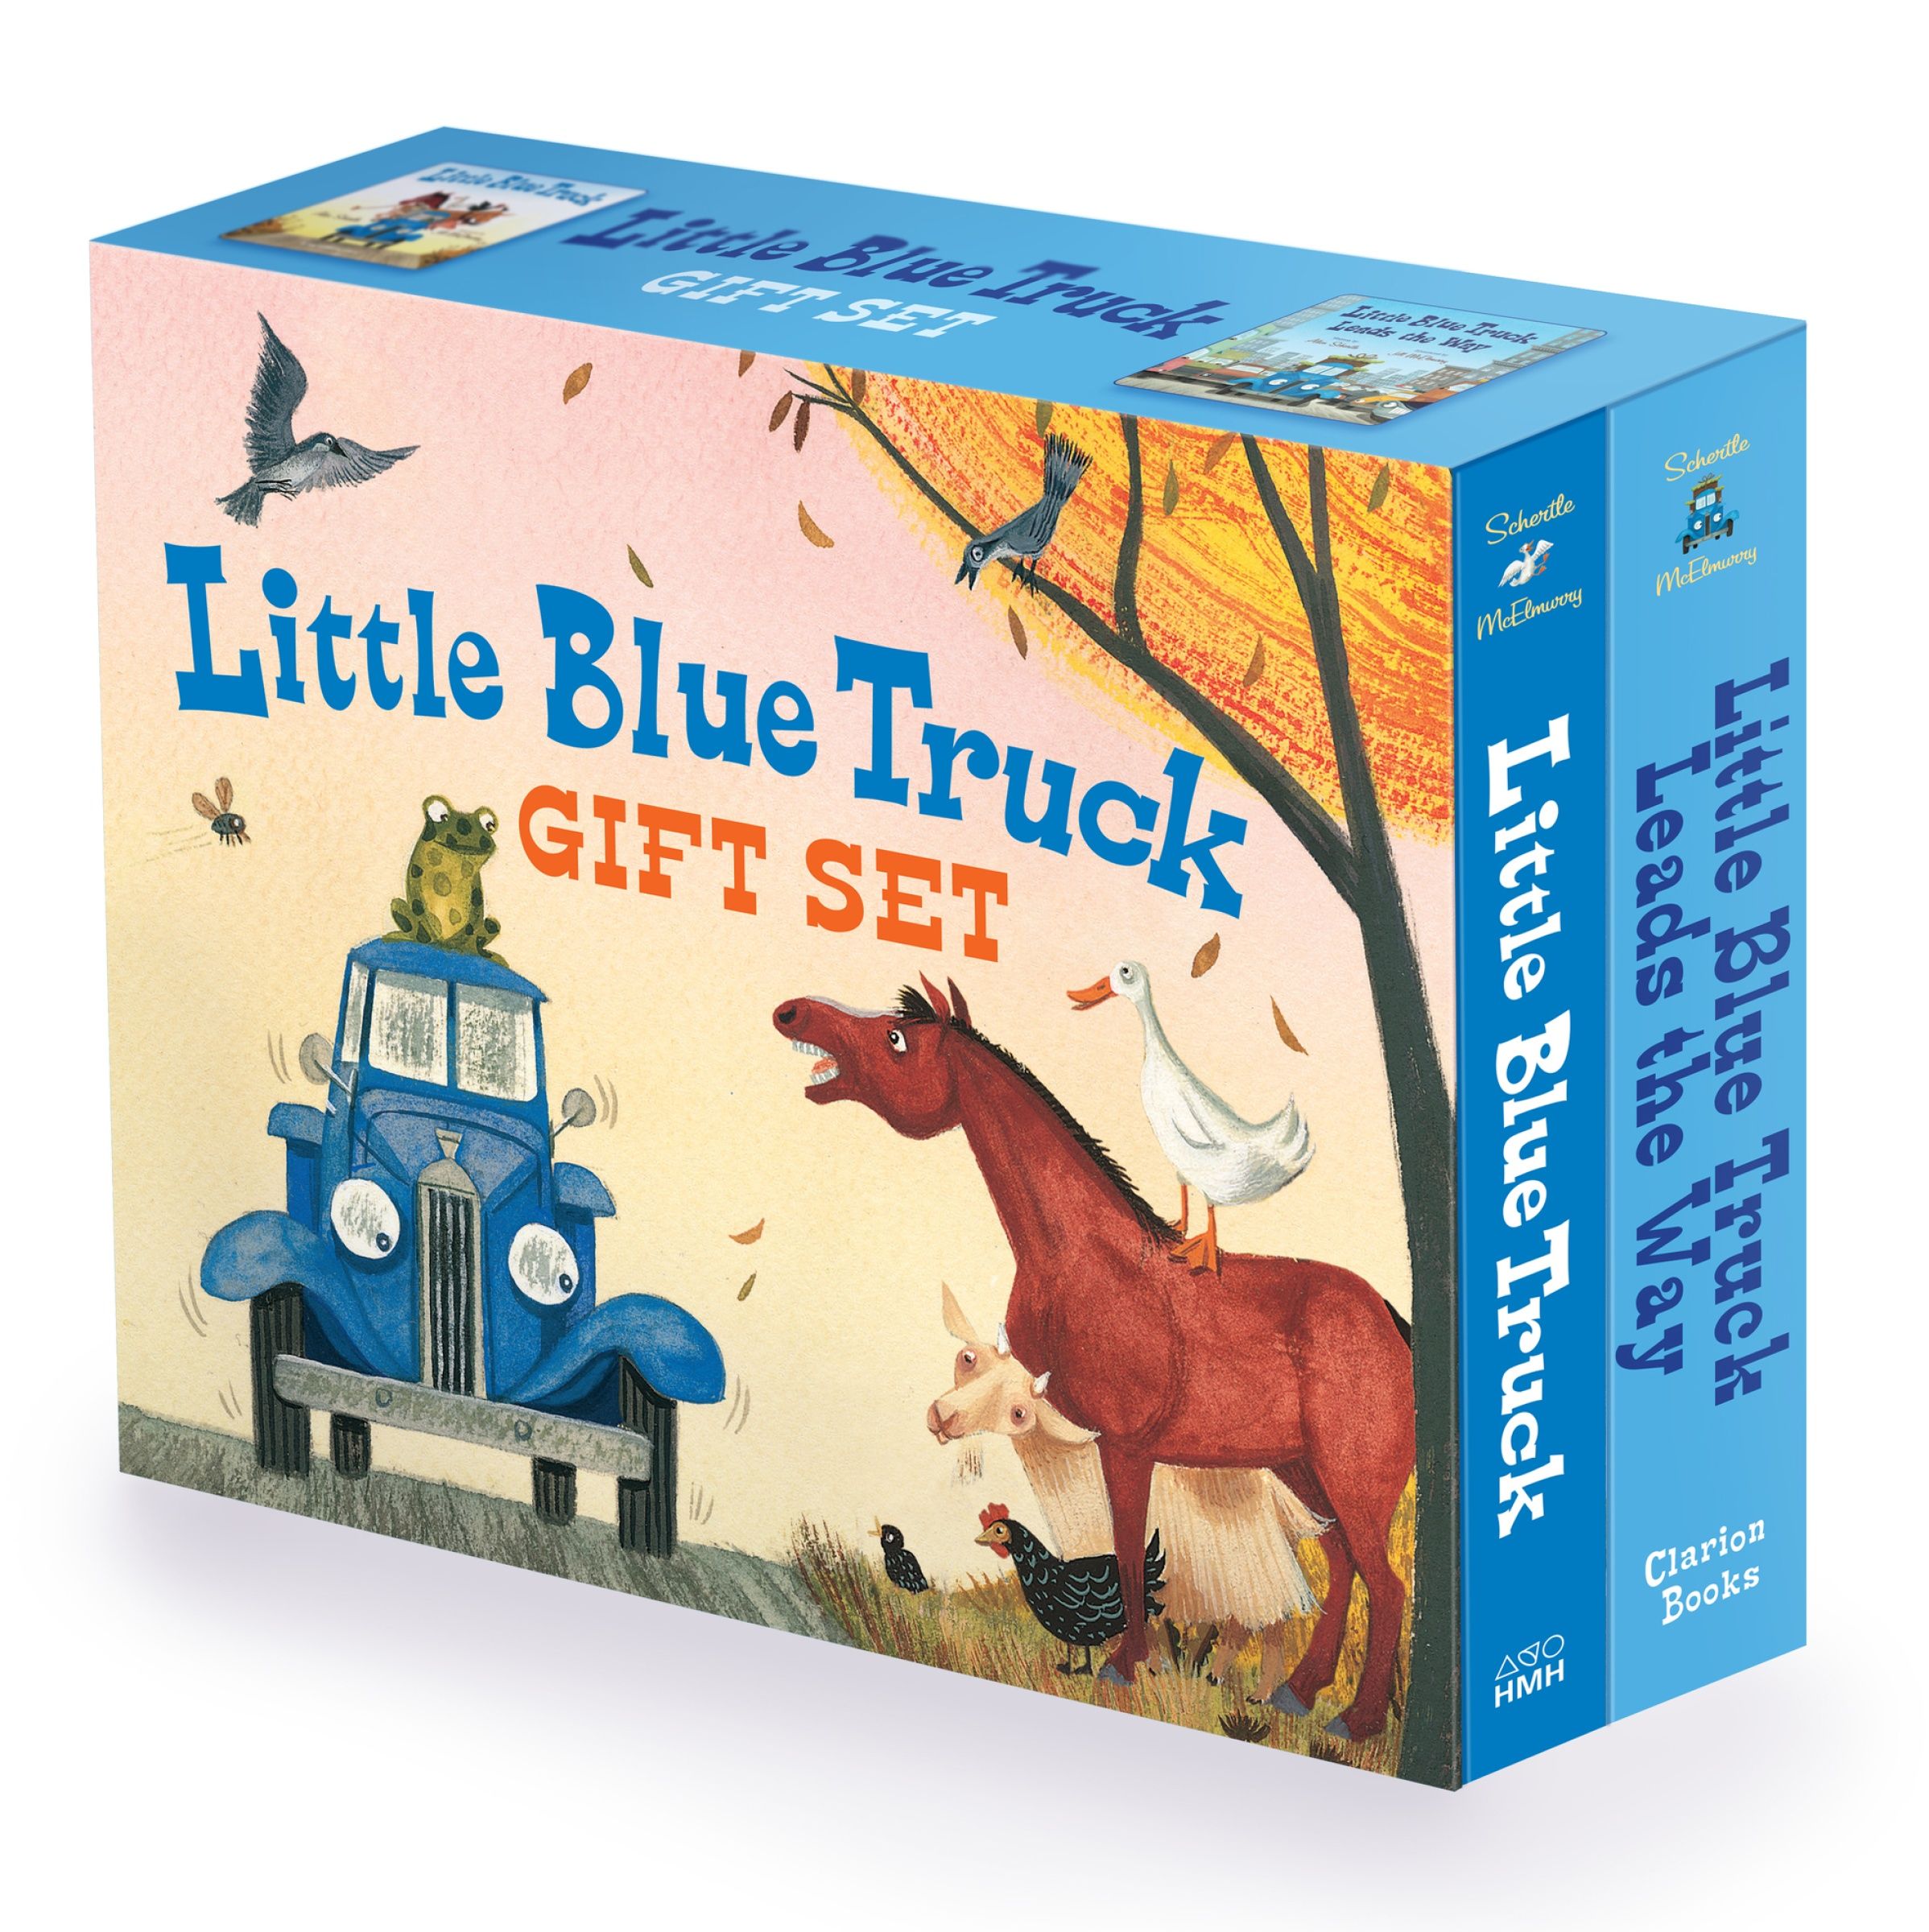 Little Blue Truck Gift Set